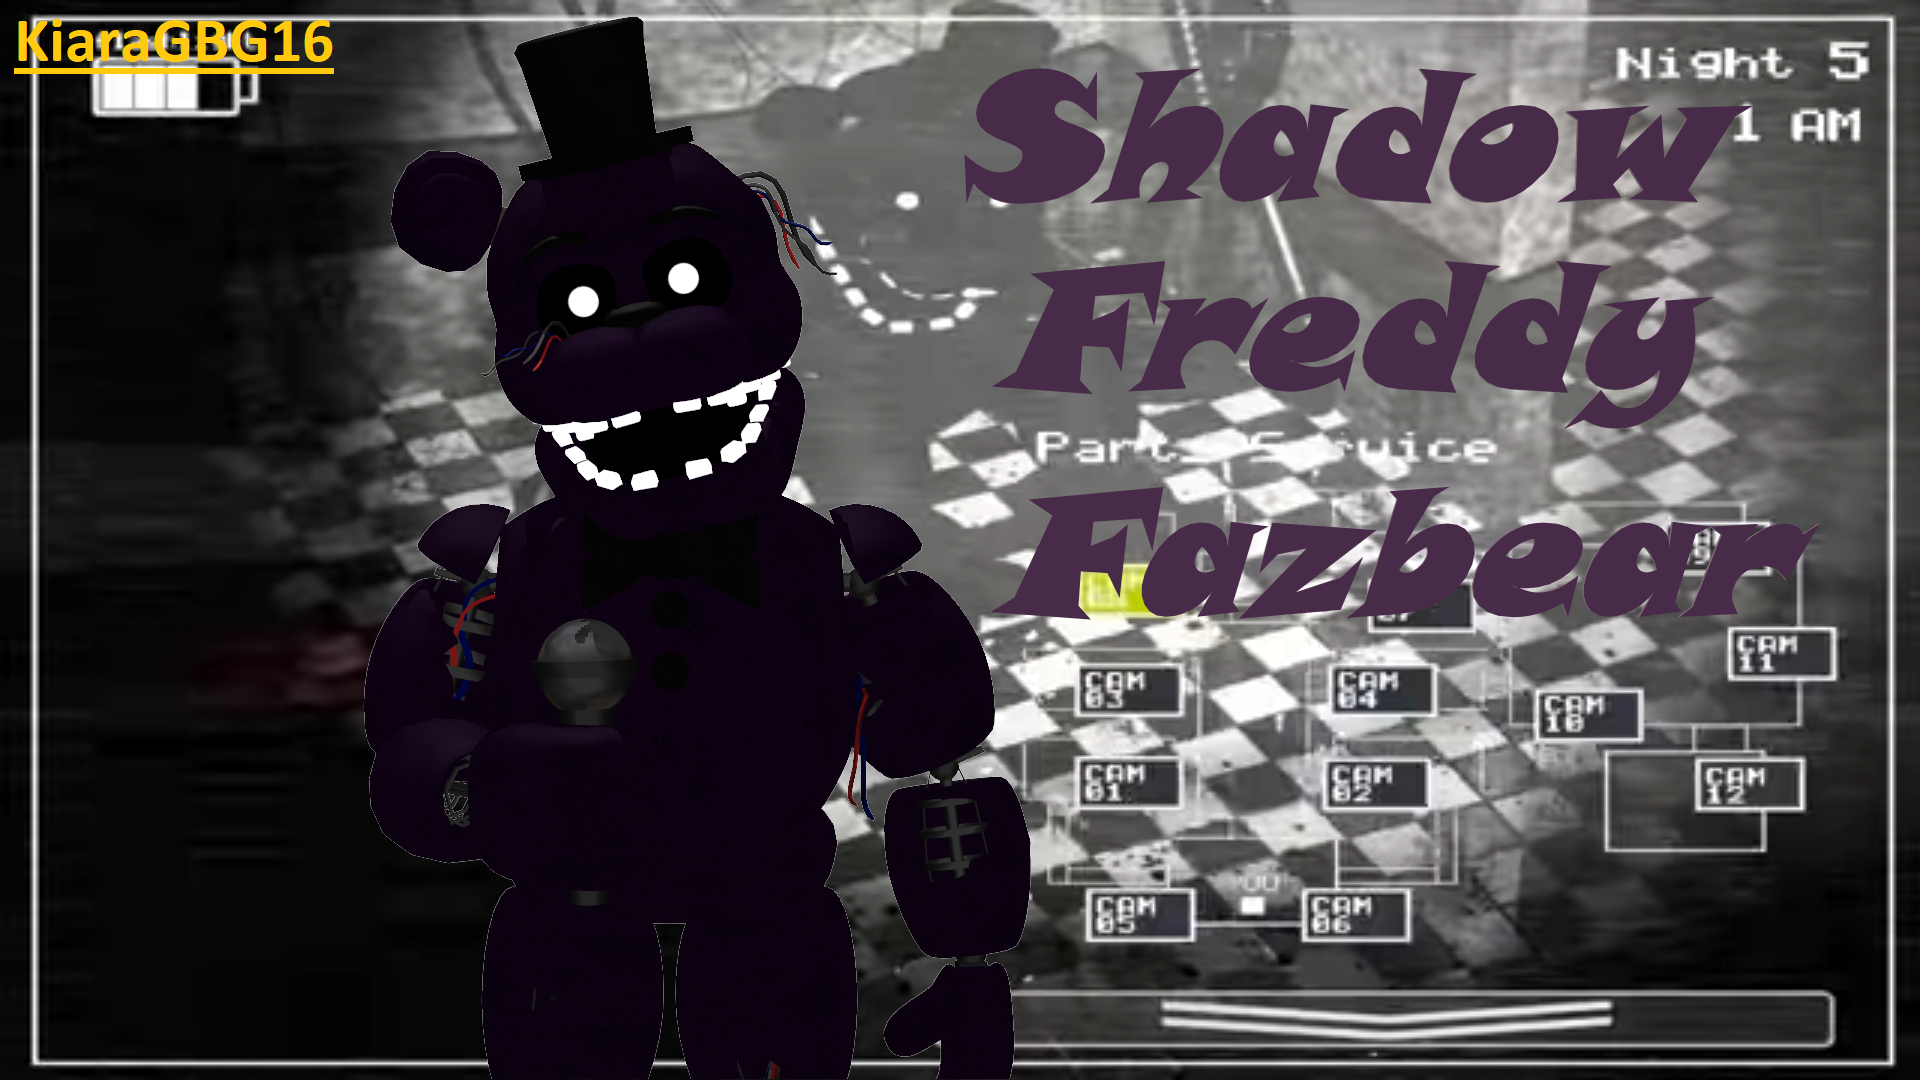 Five Nights at Freddy's - FNAF 2 - Shadow Freddy - It's Me | Postcard